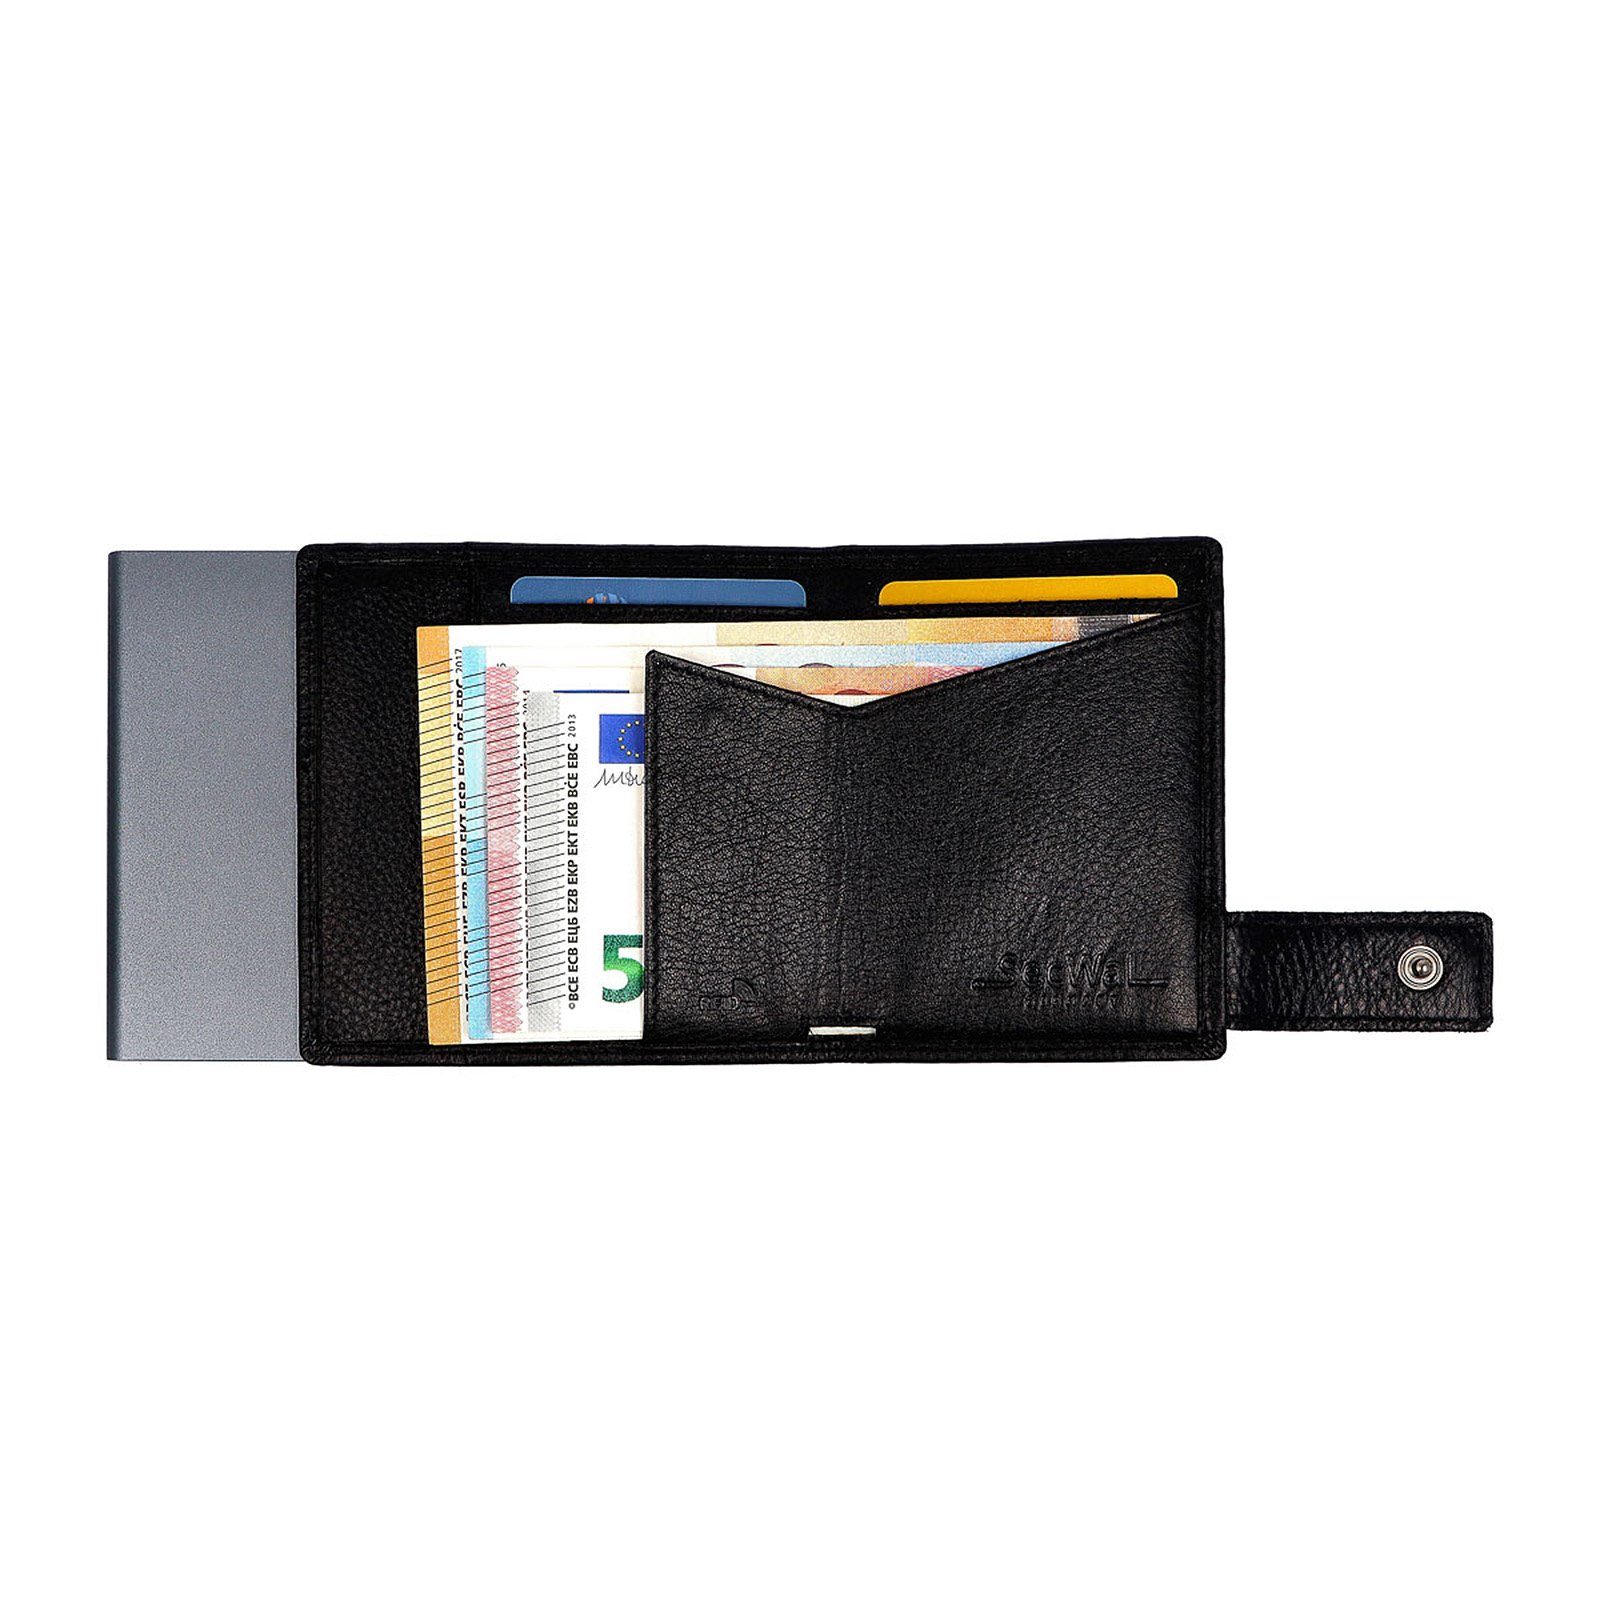 SW3, Münzfach RFID Kartenetui Schwarz Leder mit Geldbörse RFID SecWal Geldbörse Portemonnaie Schutz